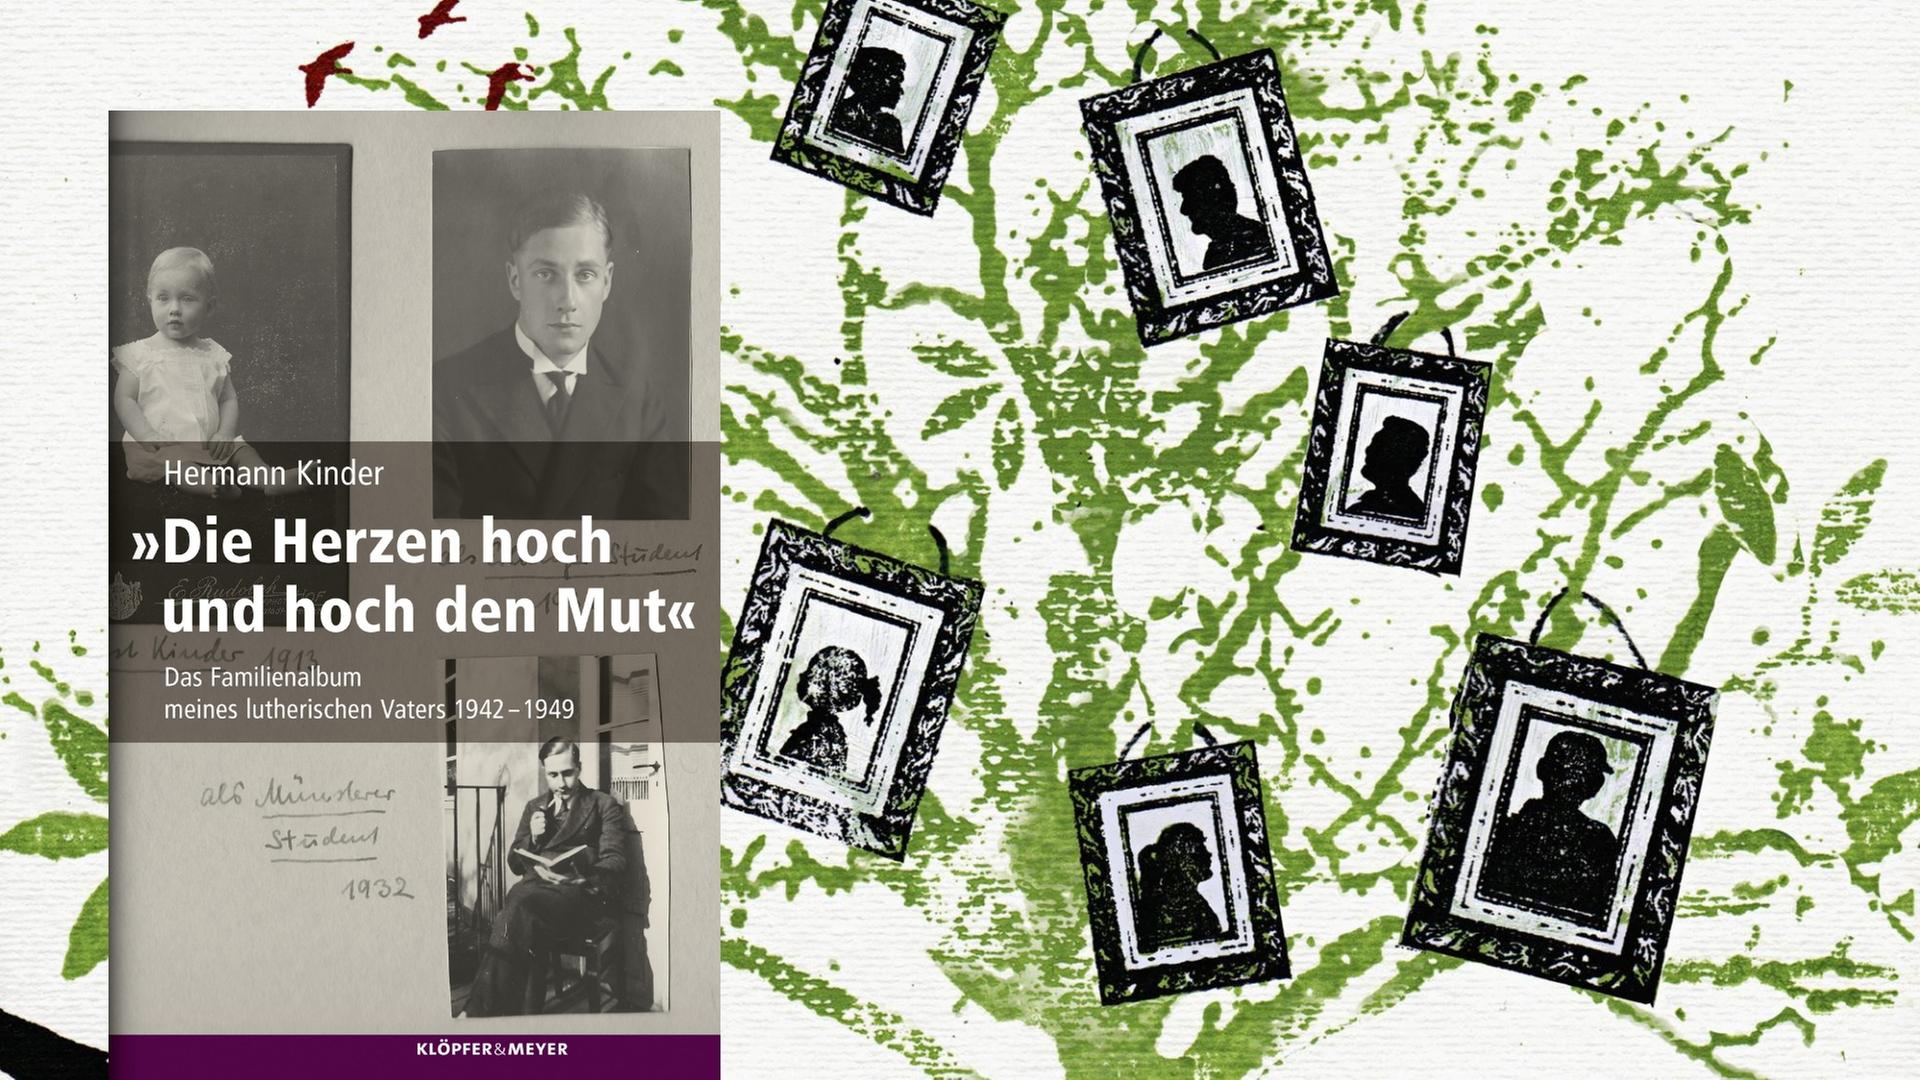 Buchcover: Hermann Kinder: "Die Herzen hoch und hoch den Mut. Das Familienalbum meines lutherischen Vaters 1942 – 1949"